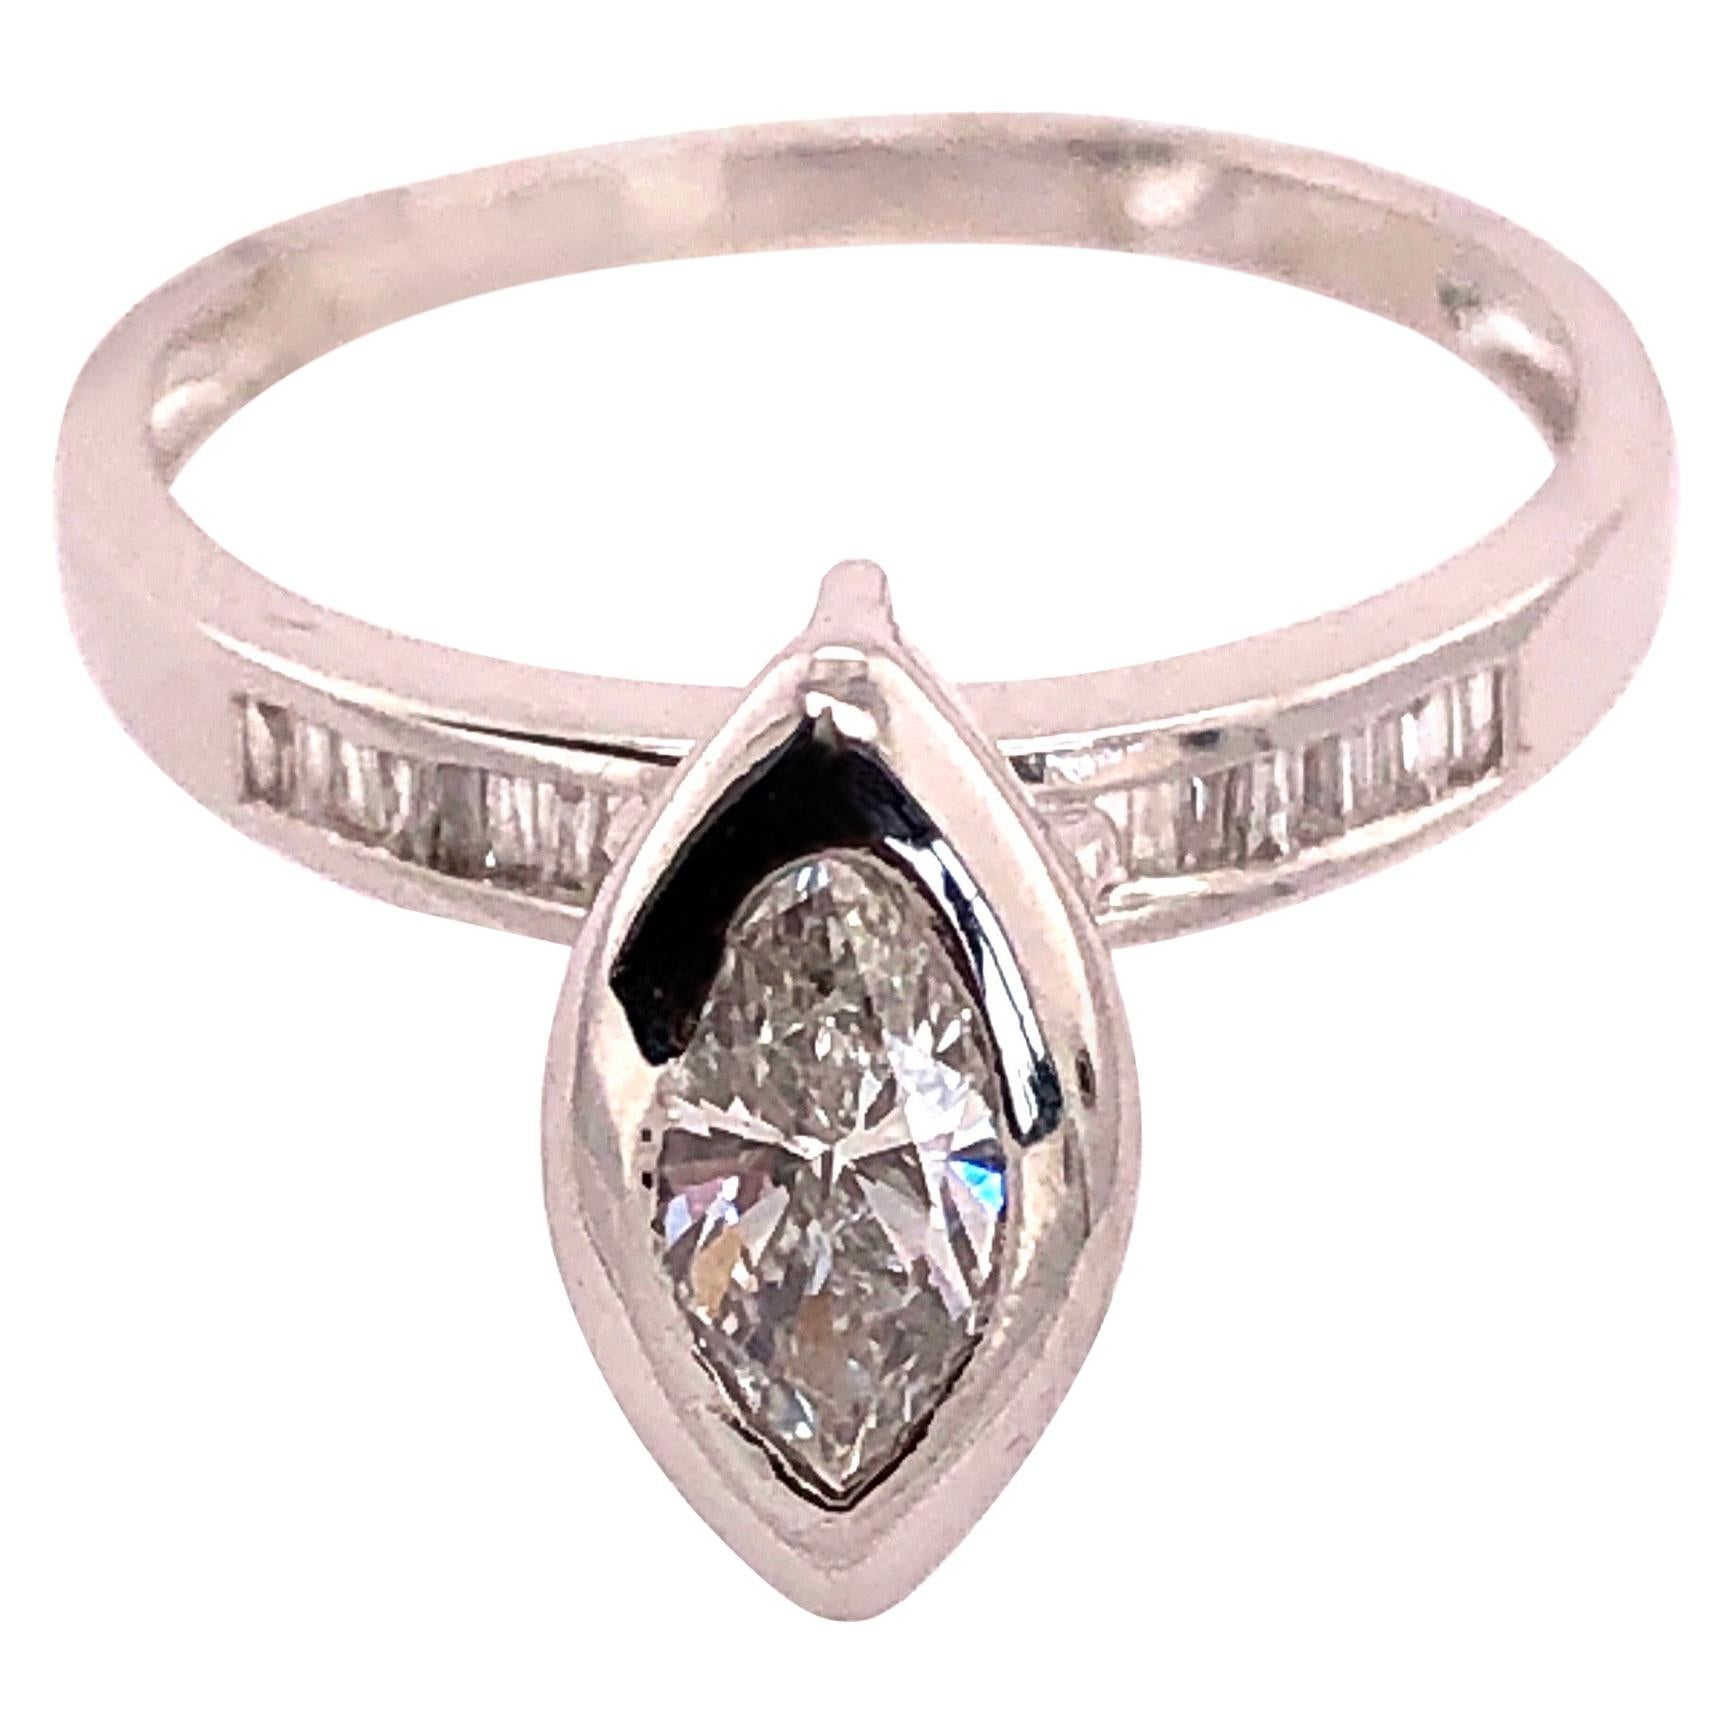 14 Karat White Gold Engagement Ring 1.10 Total Diamond Weight